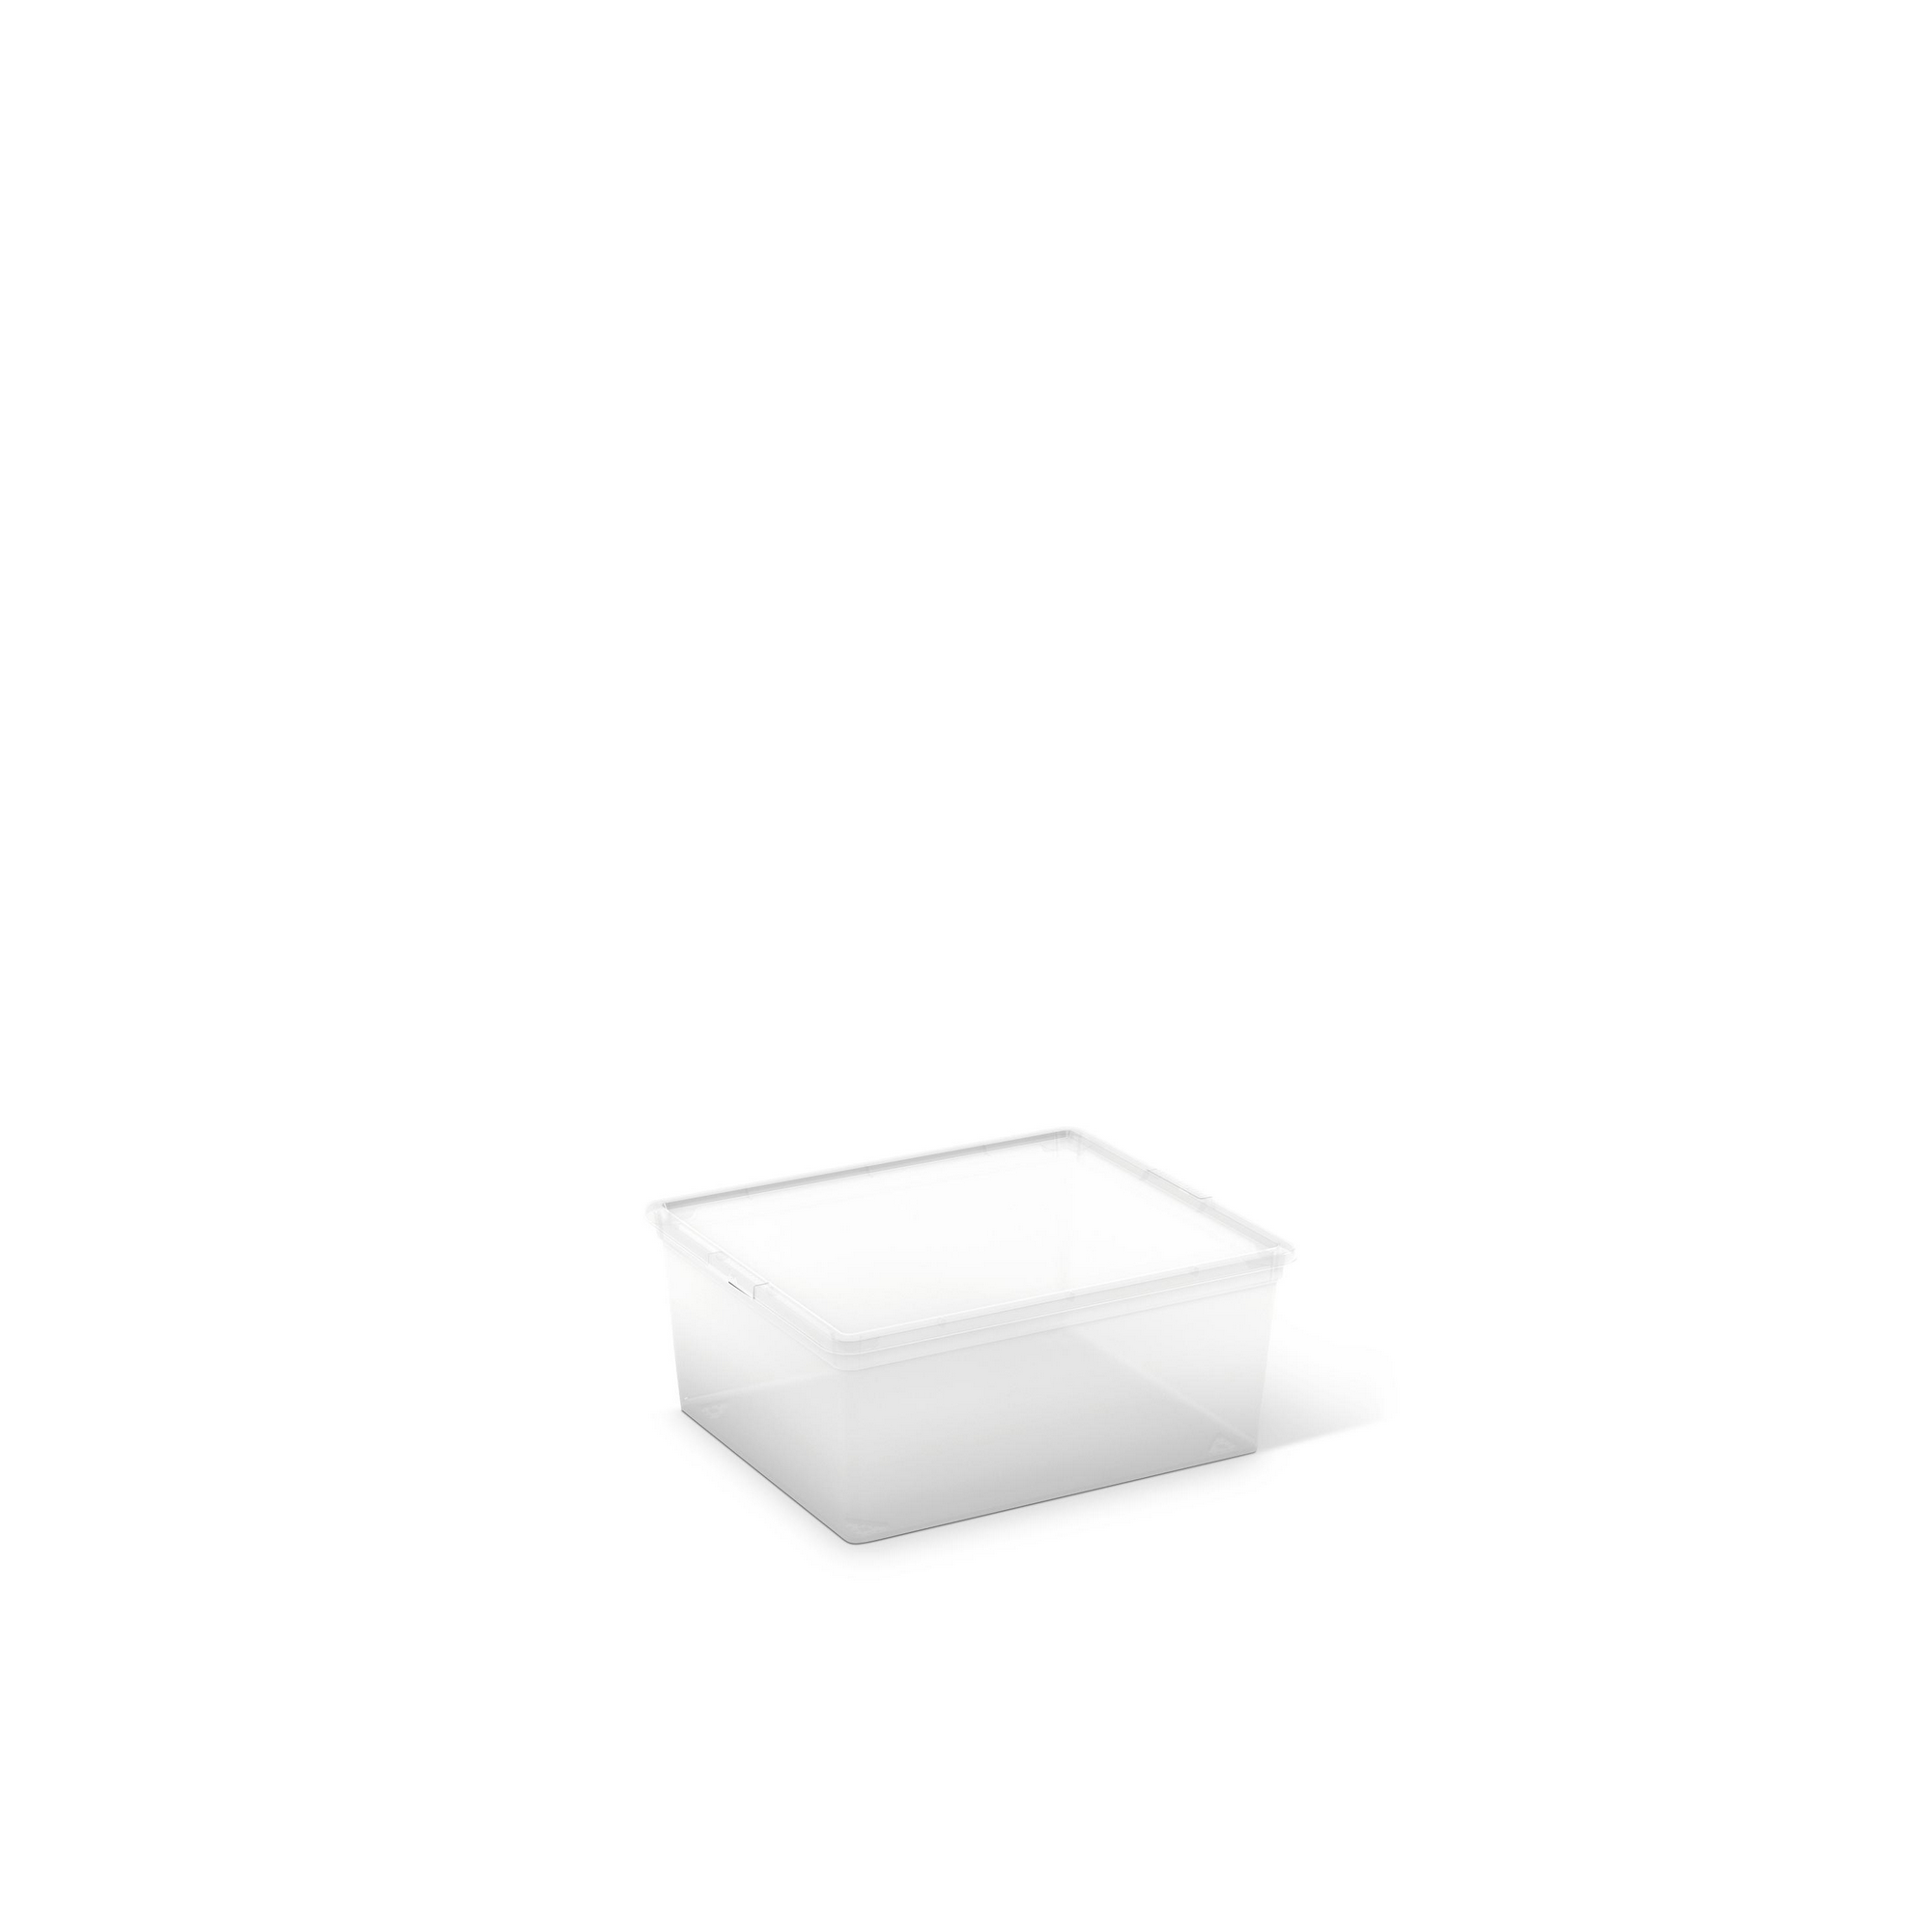 Aufbewahrungsbox 'C-Box' Größe M 40 x 34 x 17 cm + product picture